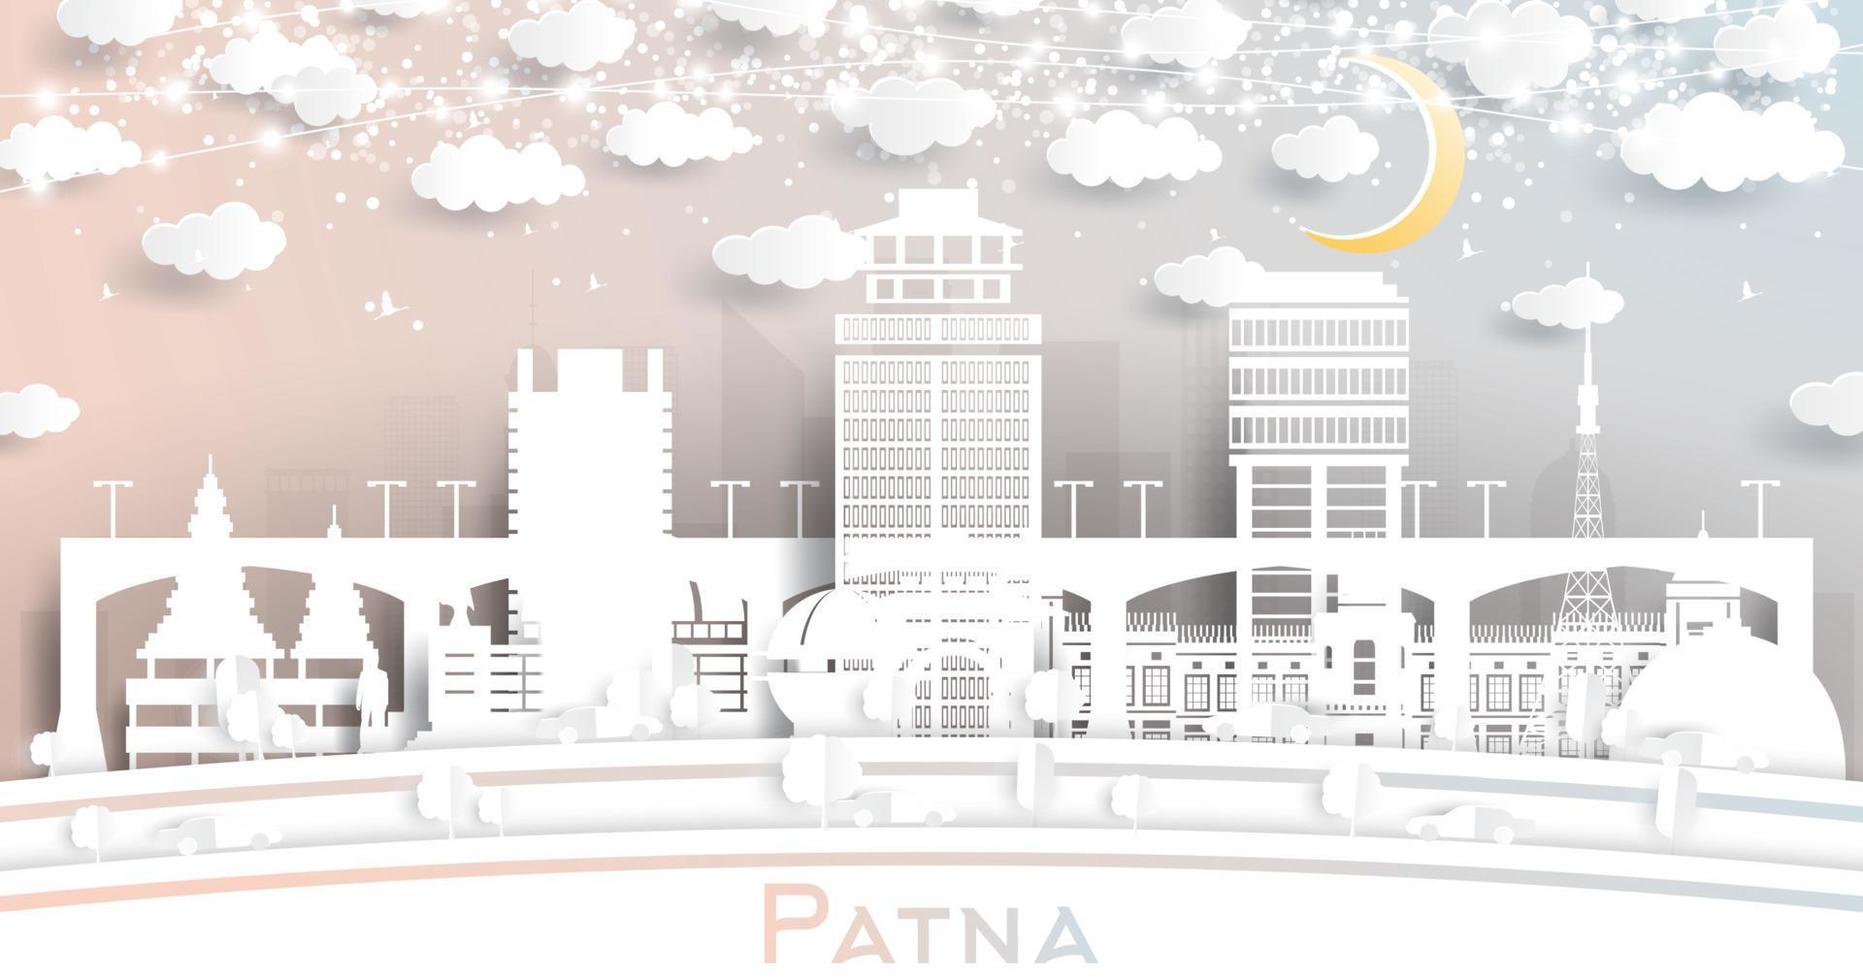 horizonte de la ciudad de patna india en estilo de corte de papel con edificios blancos, luna y guirnalda de neón. vector